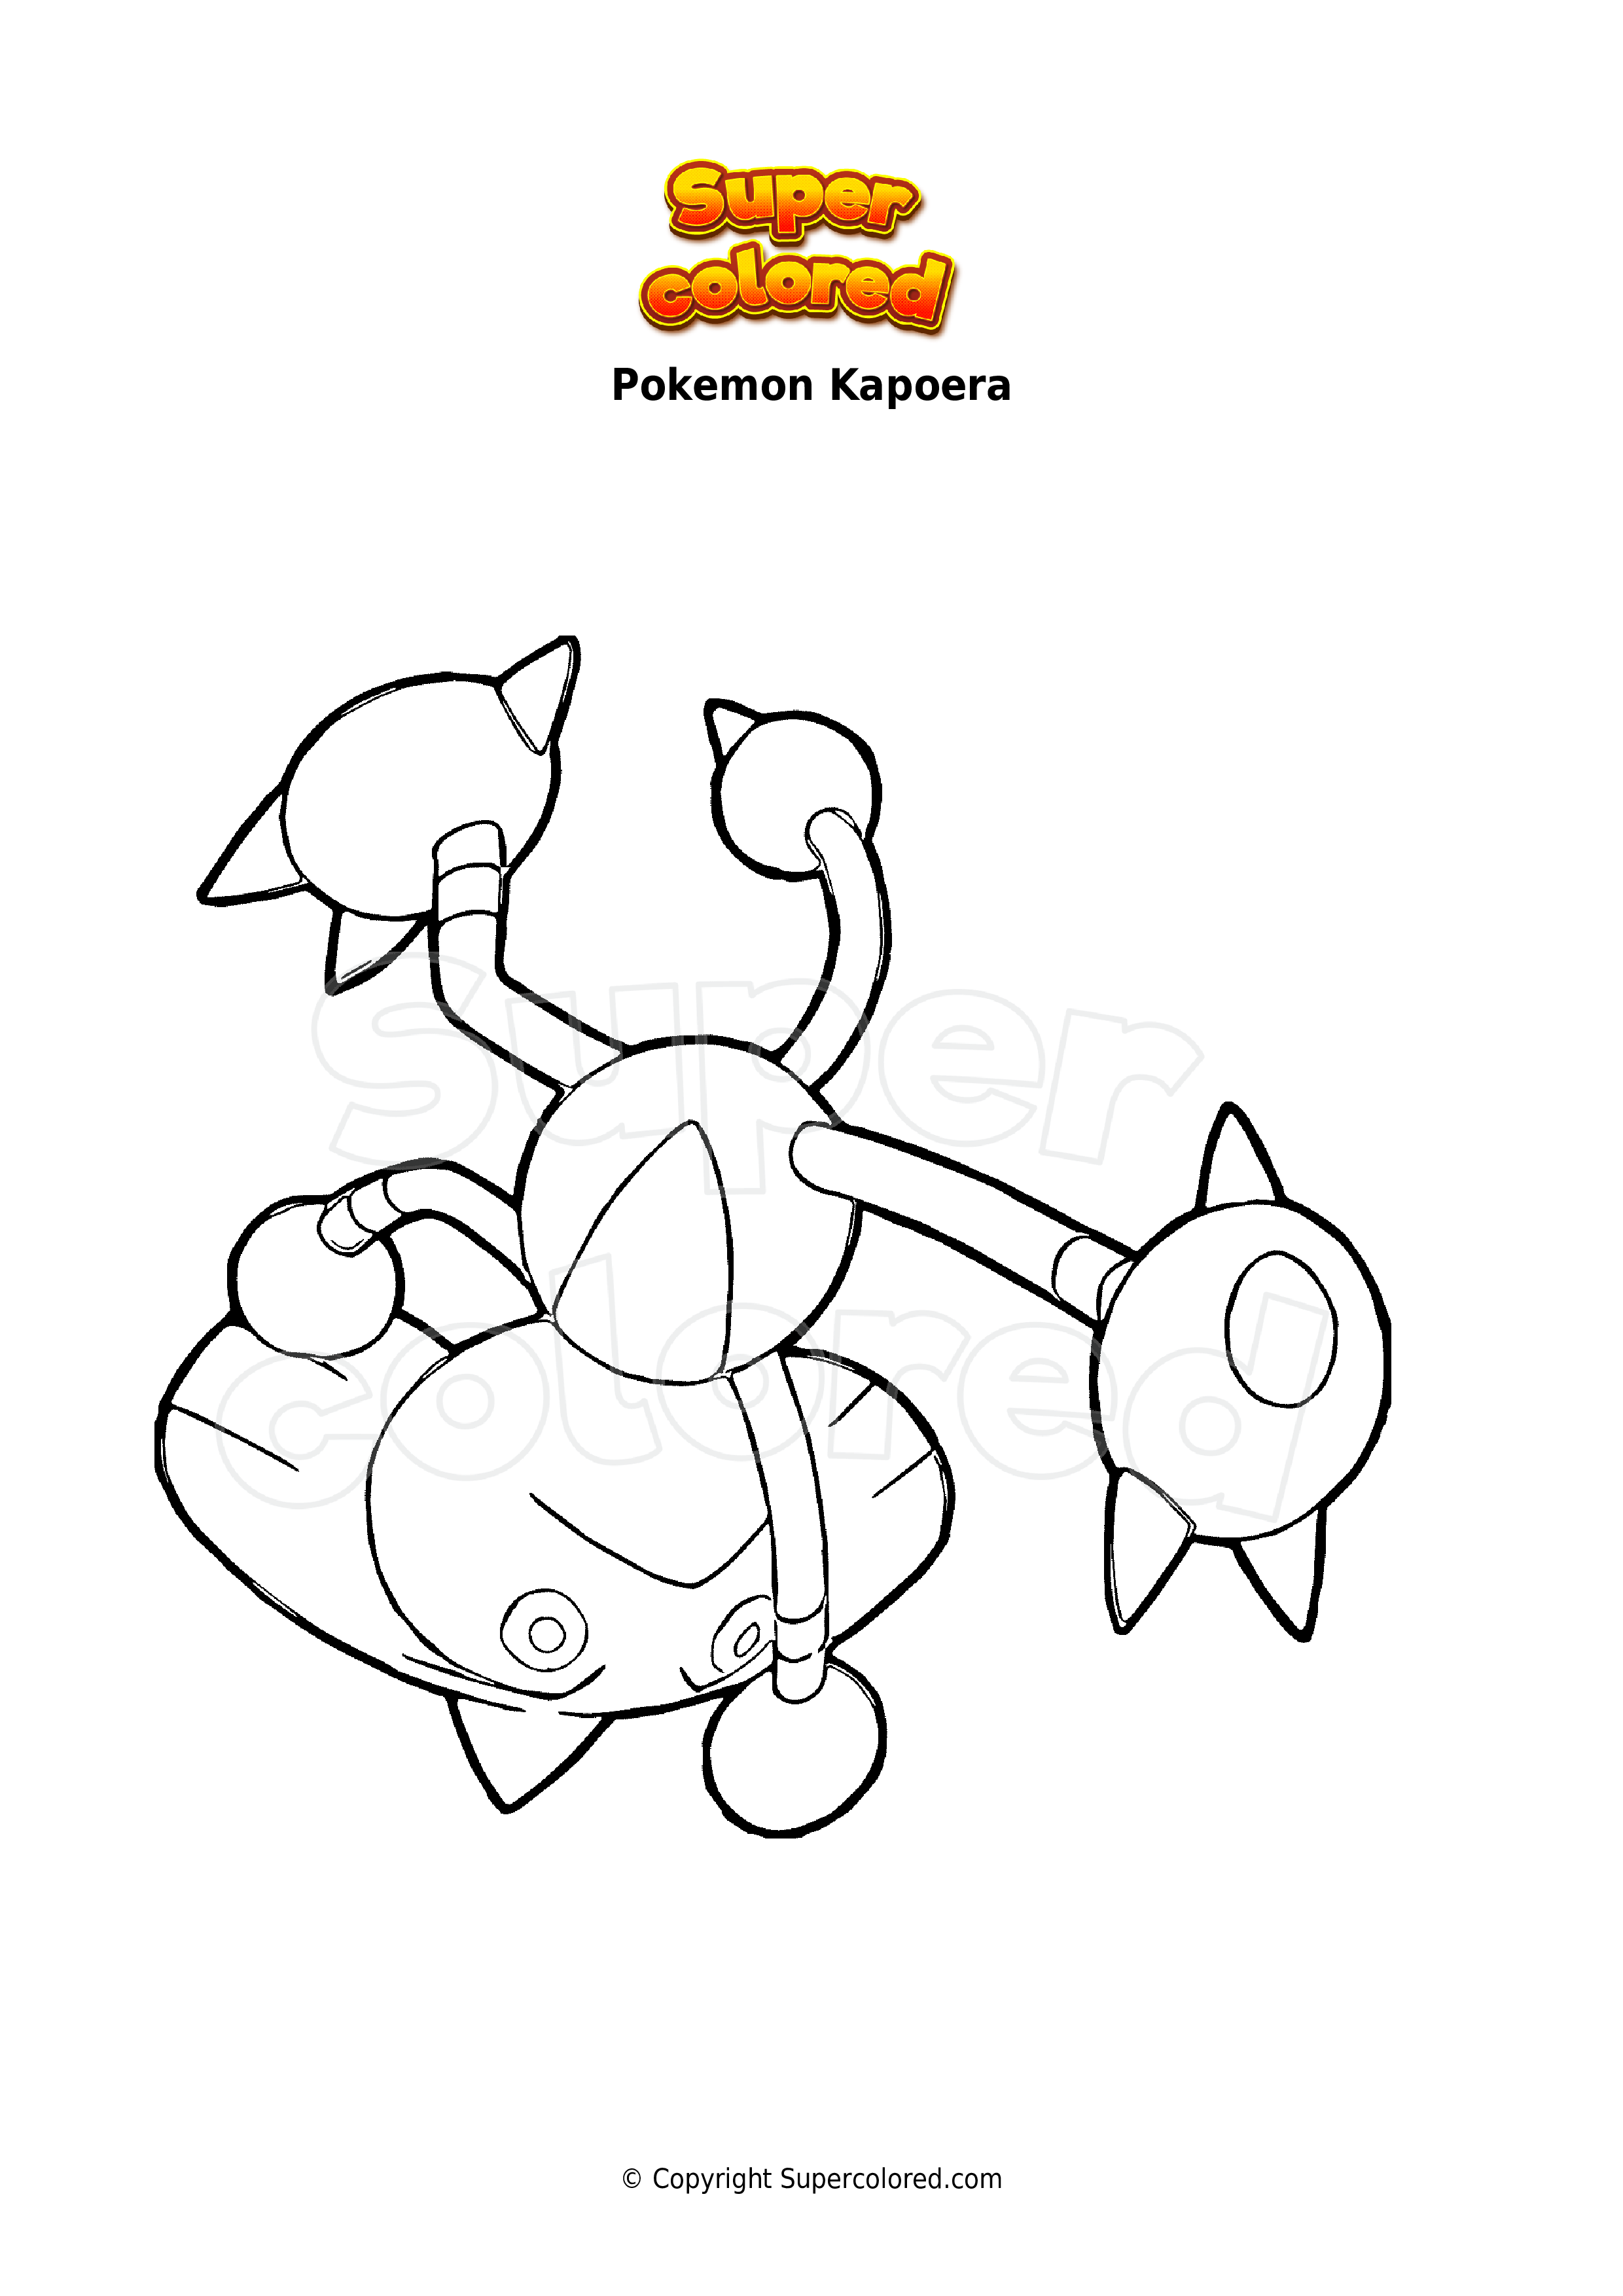 Coloriage de Pokémon, image coloriage pokemon kapoera à colorier